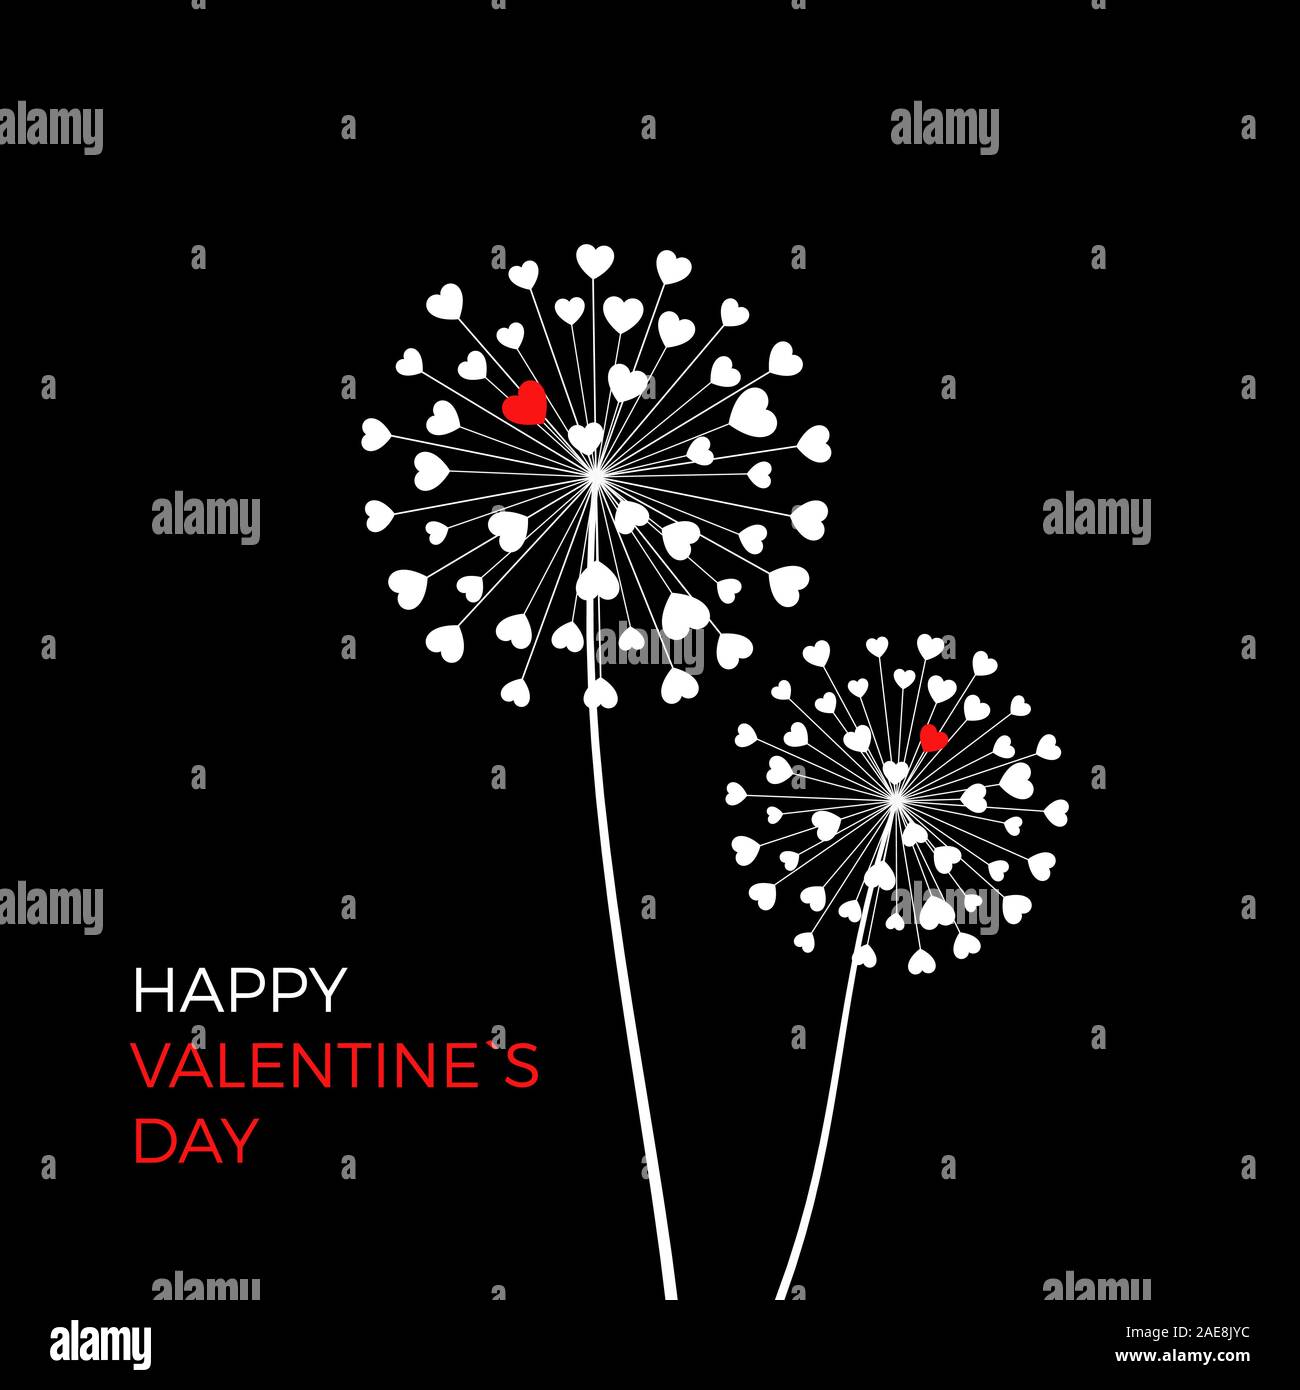 Paar Löwenzahn mit roten Herzen. Happy Valentinstag Grußkarten auf schwarzem Hintergrund. Weiß mit roten Herzen blowball Symbol der Liebe. Vektor Stock Vektor